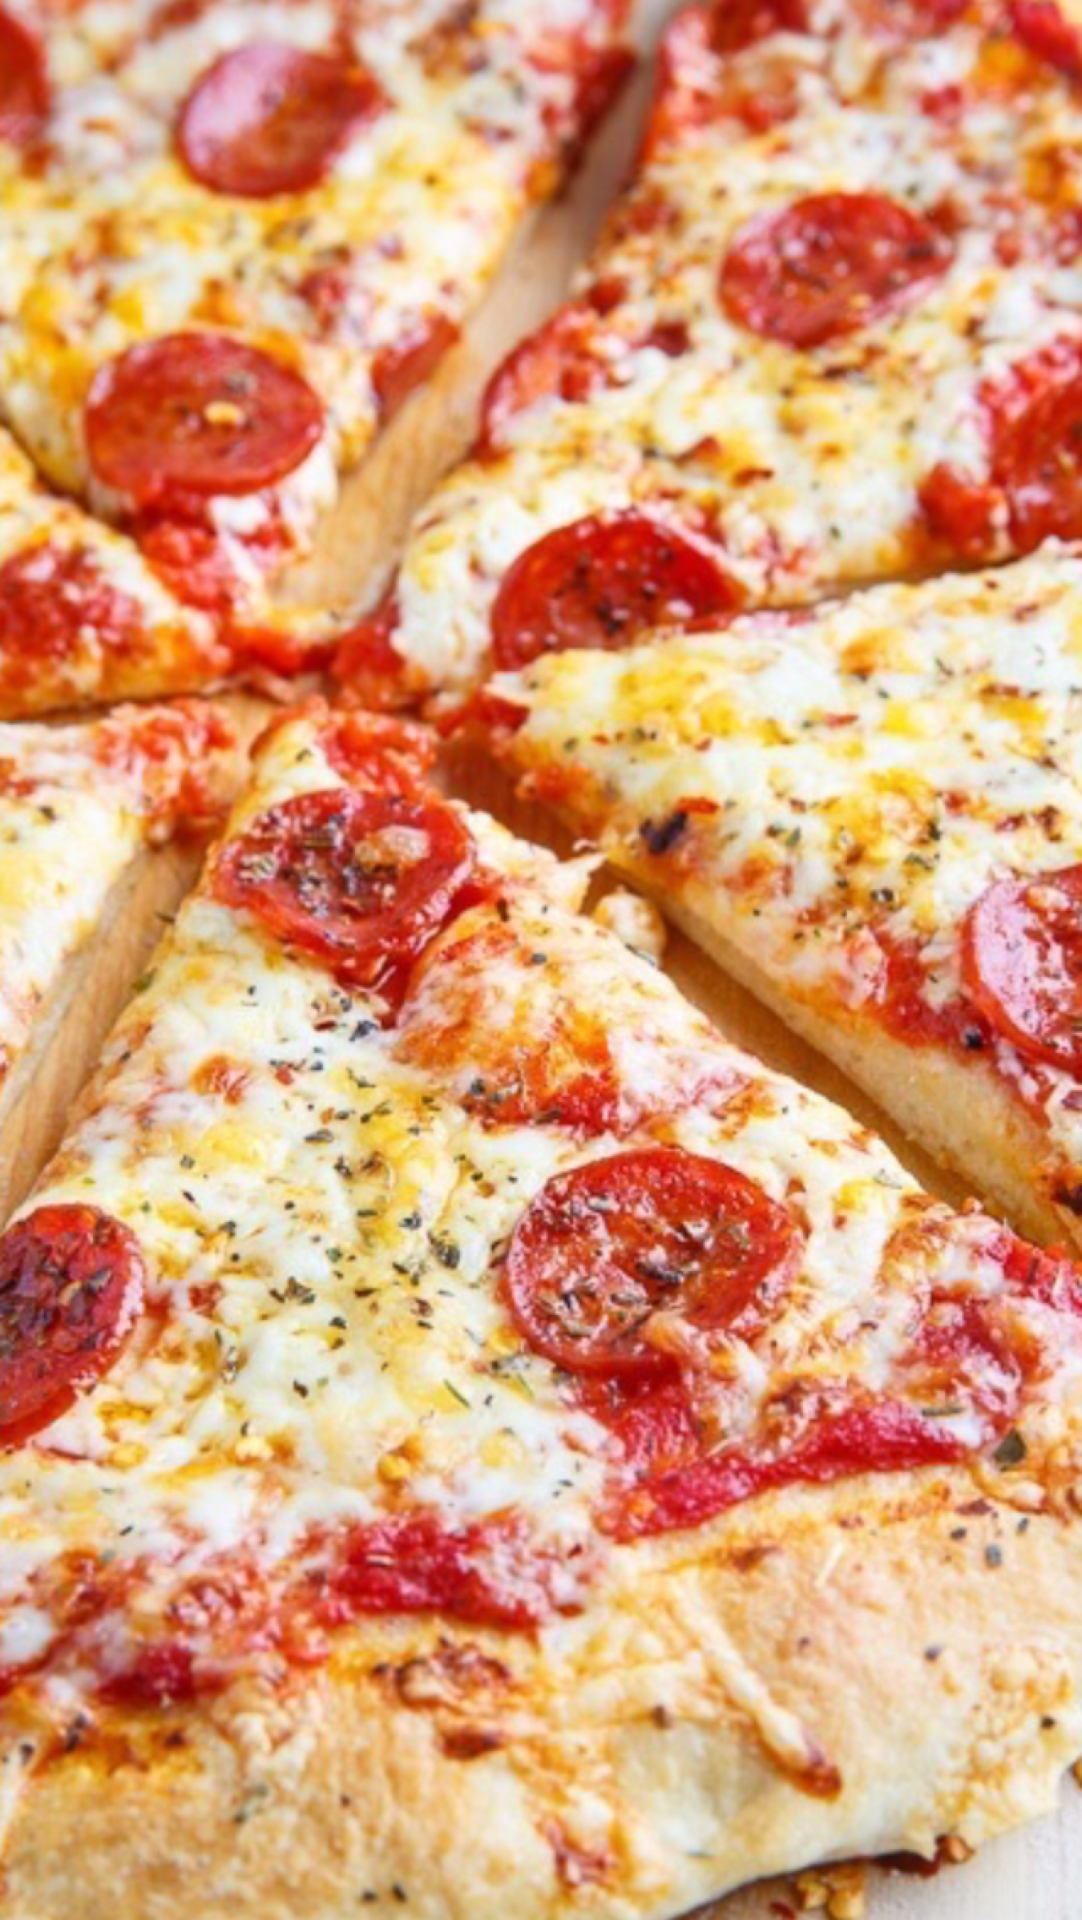 피자 배경 tumblr,요리,음식,피자,캘리포니아 스타일 피자,플랫 브레드